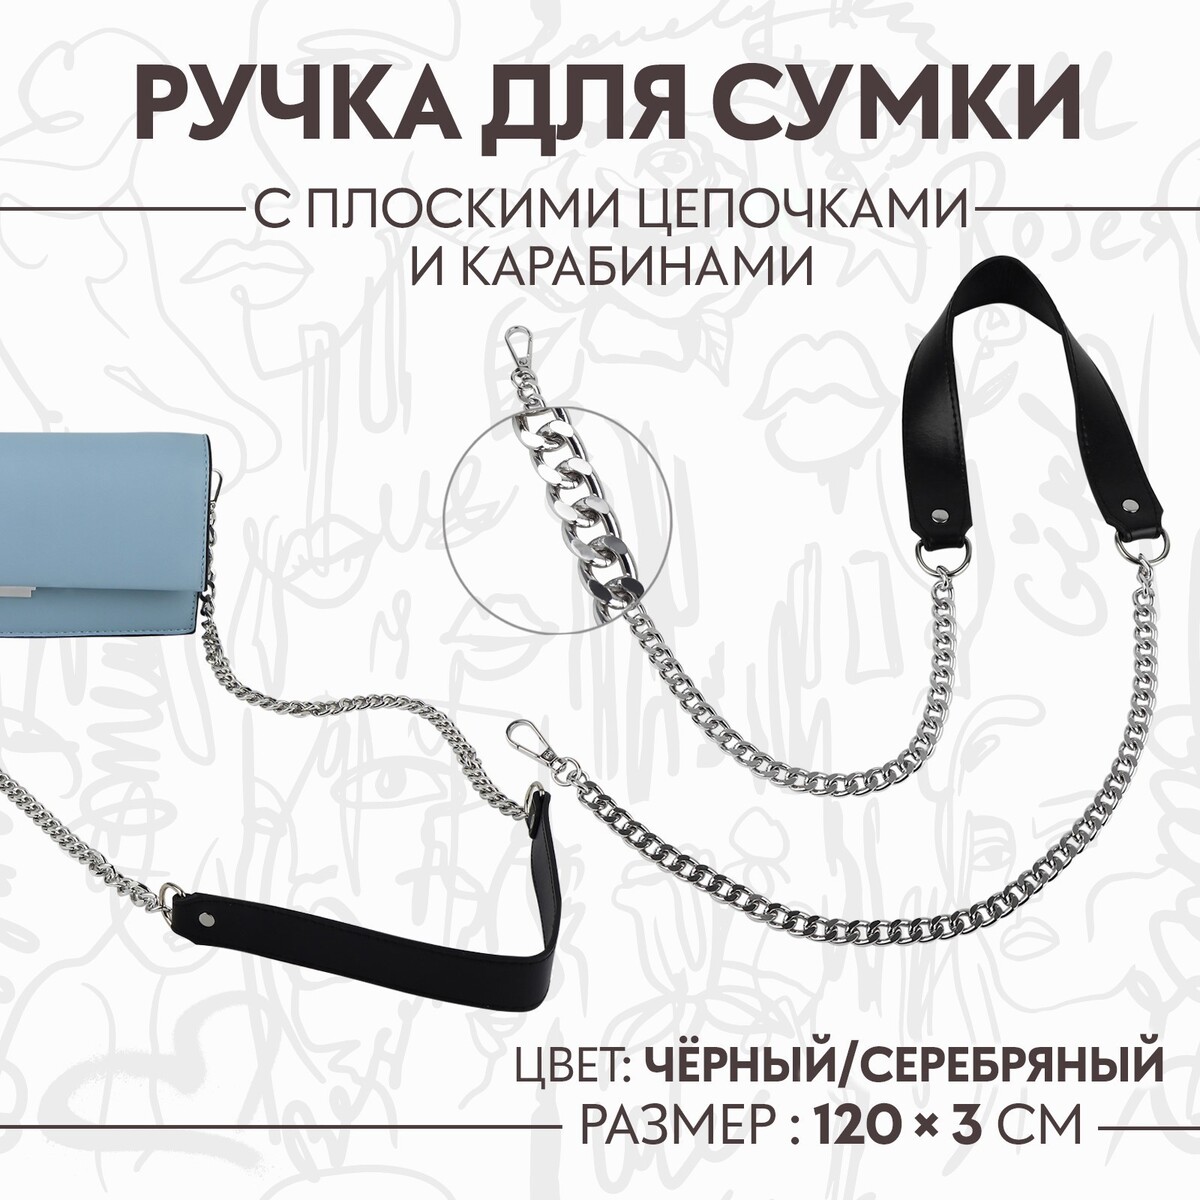 Ручка для сумки, с плоскими цепочками и карабинами, 120 × 3 см, цвет черный/серебряный